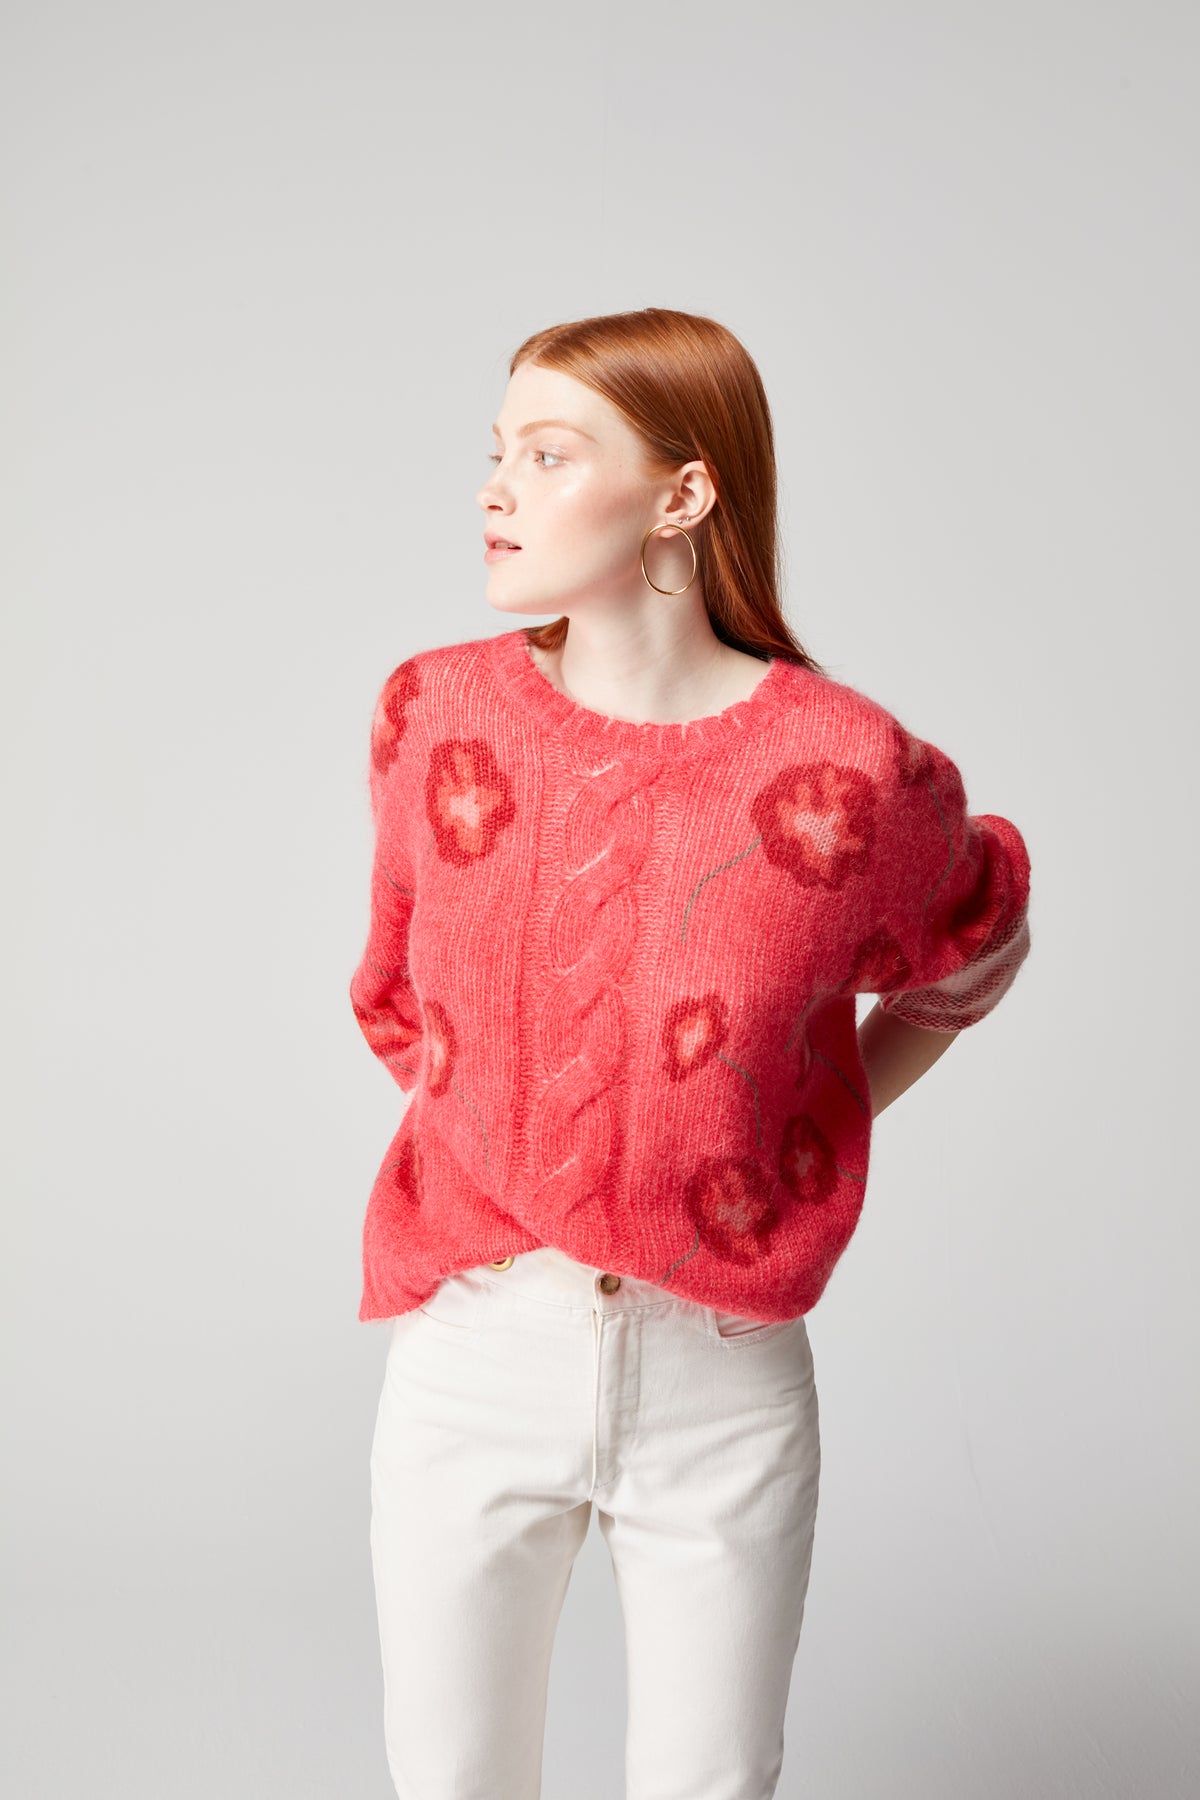 Ellis sweater in raspberry Poppy knit